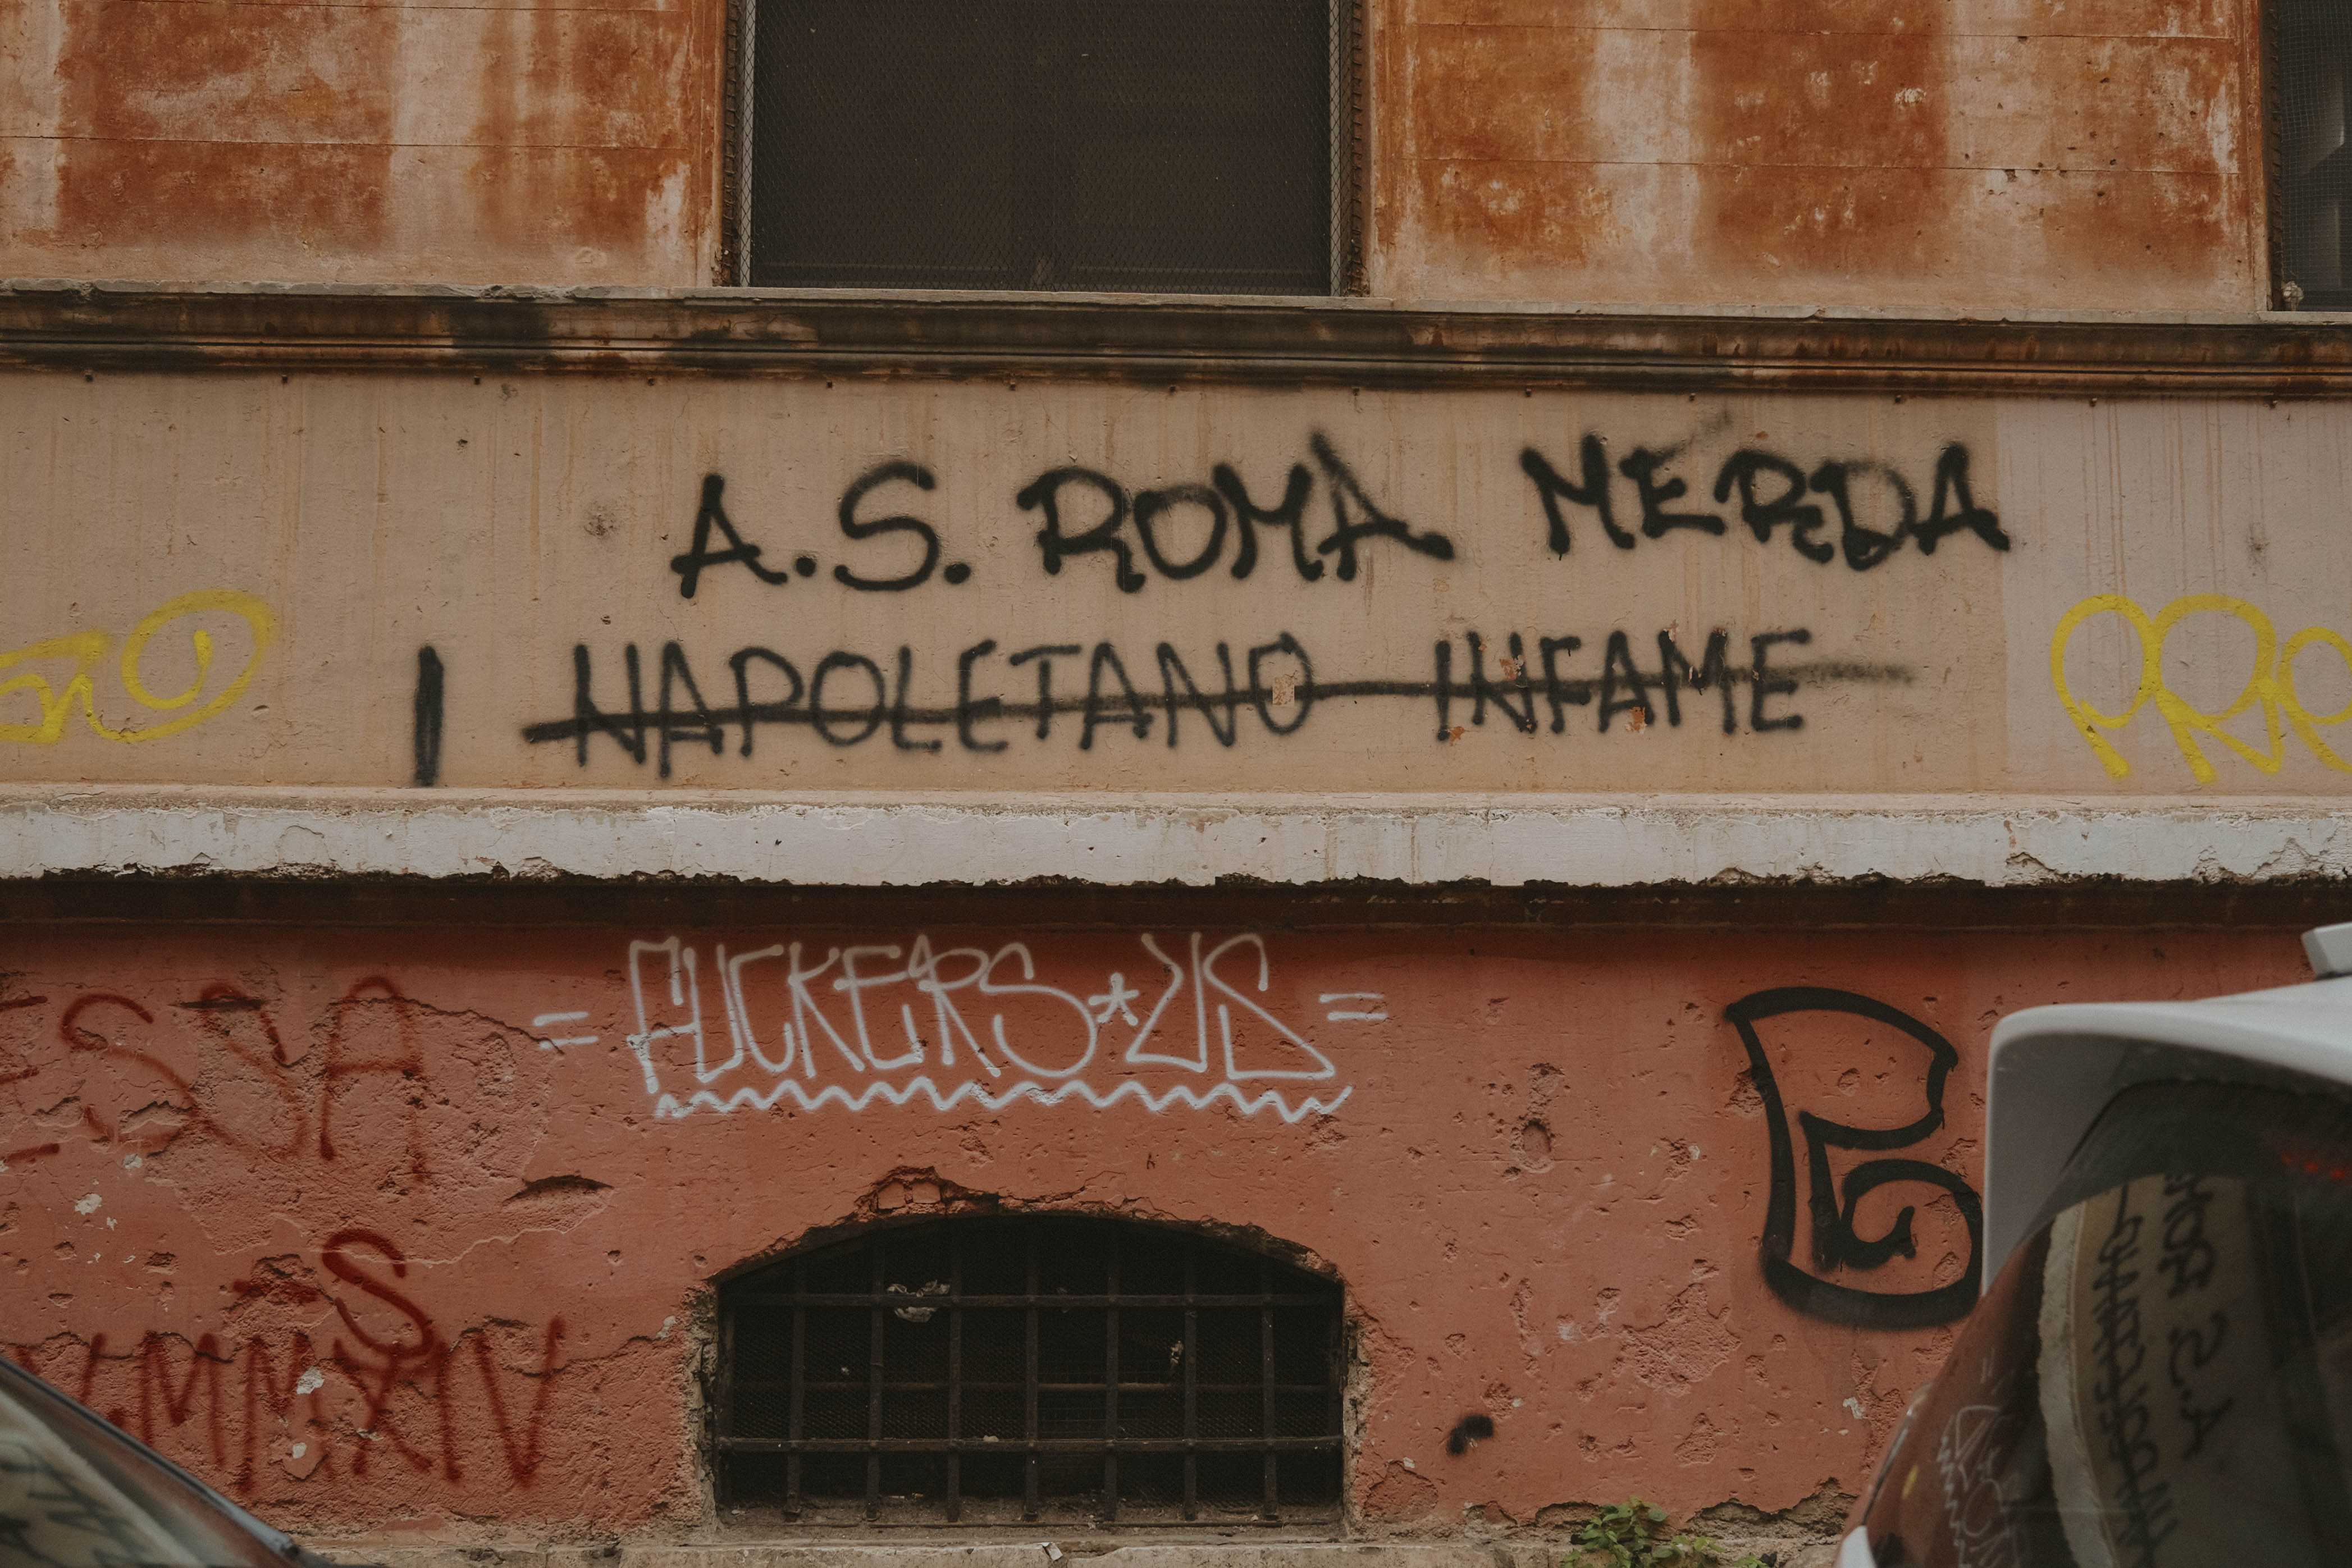 Graffiti reading AS Roma Merda